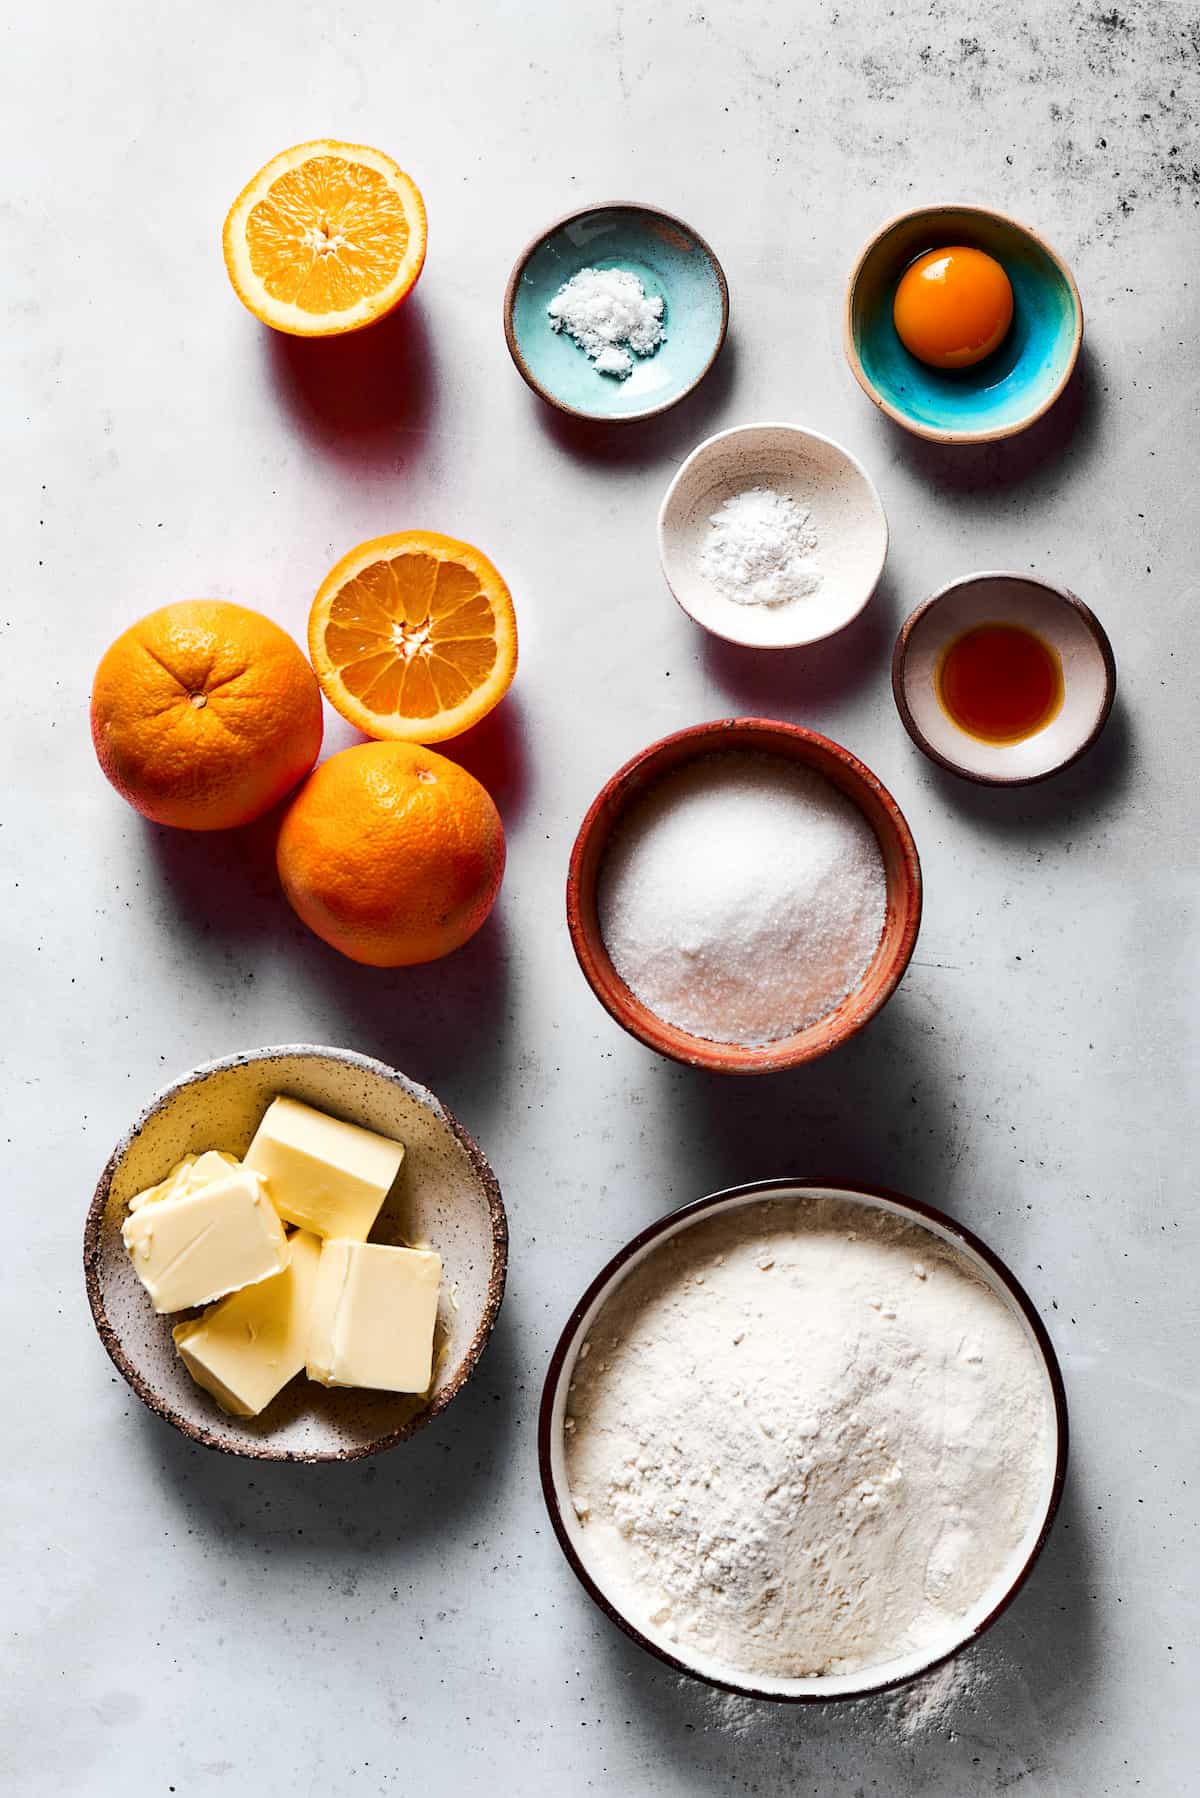 From top: Oranges, salt, orange zest, baking powder, vanilla, sugar, butter, flour.